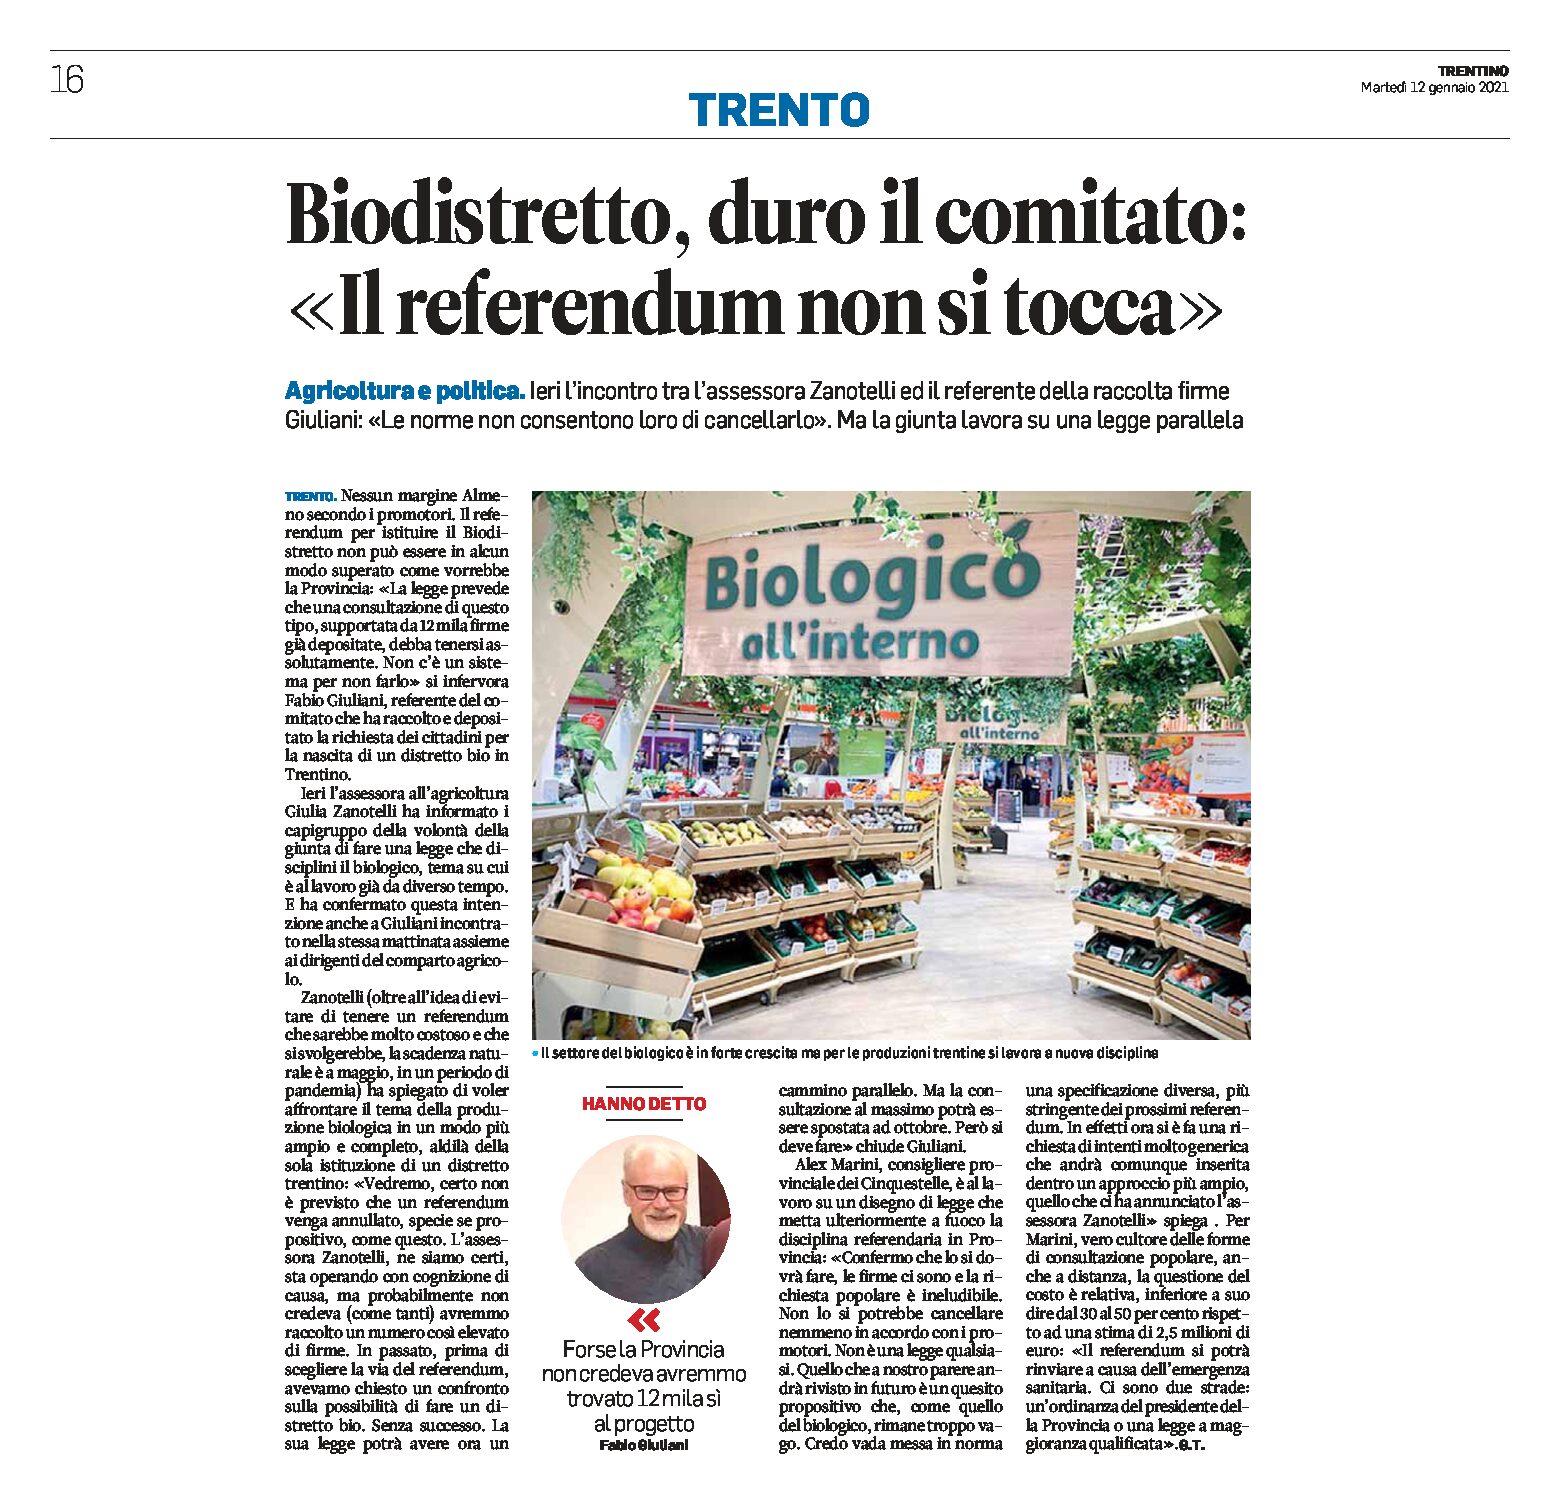 Trentino, biodistretto: duro il comitato “il referendum non si tocca”